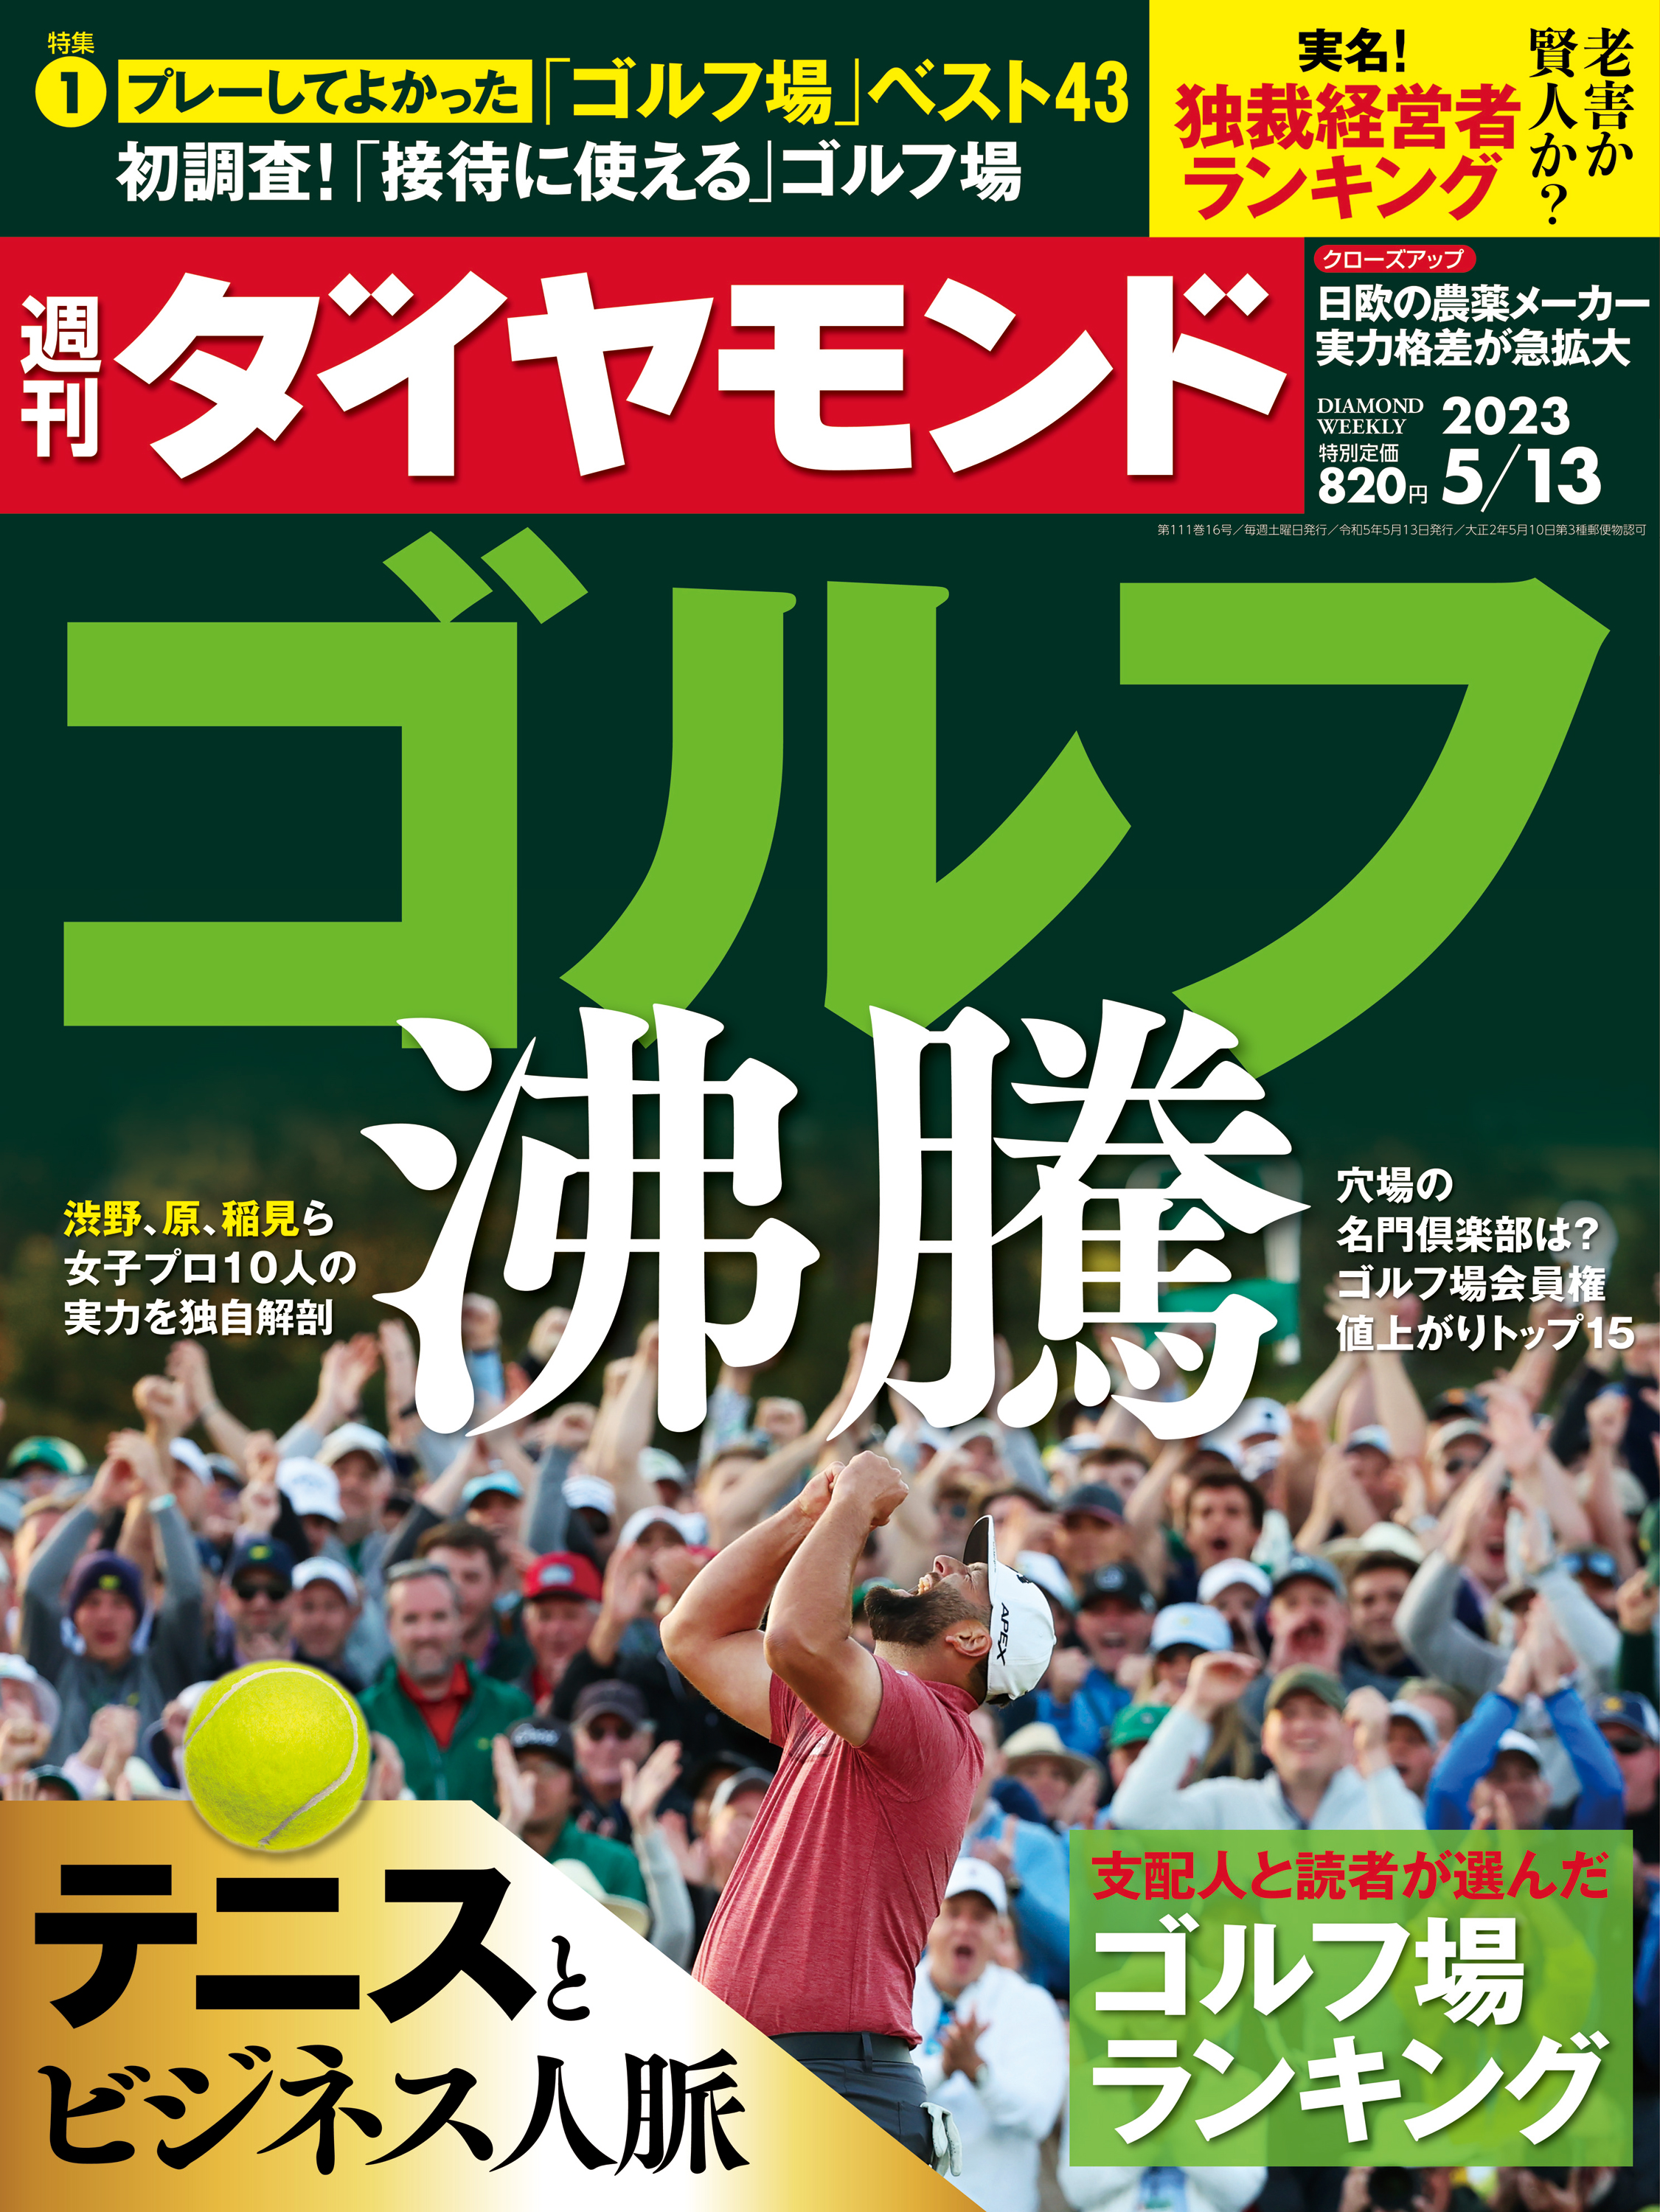 ゴルフ沸騰(週刊ダイヤモンド 2023年5/13号) - ダイヤモンド社 - 漫画 ...